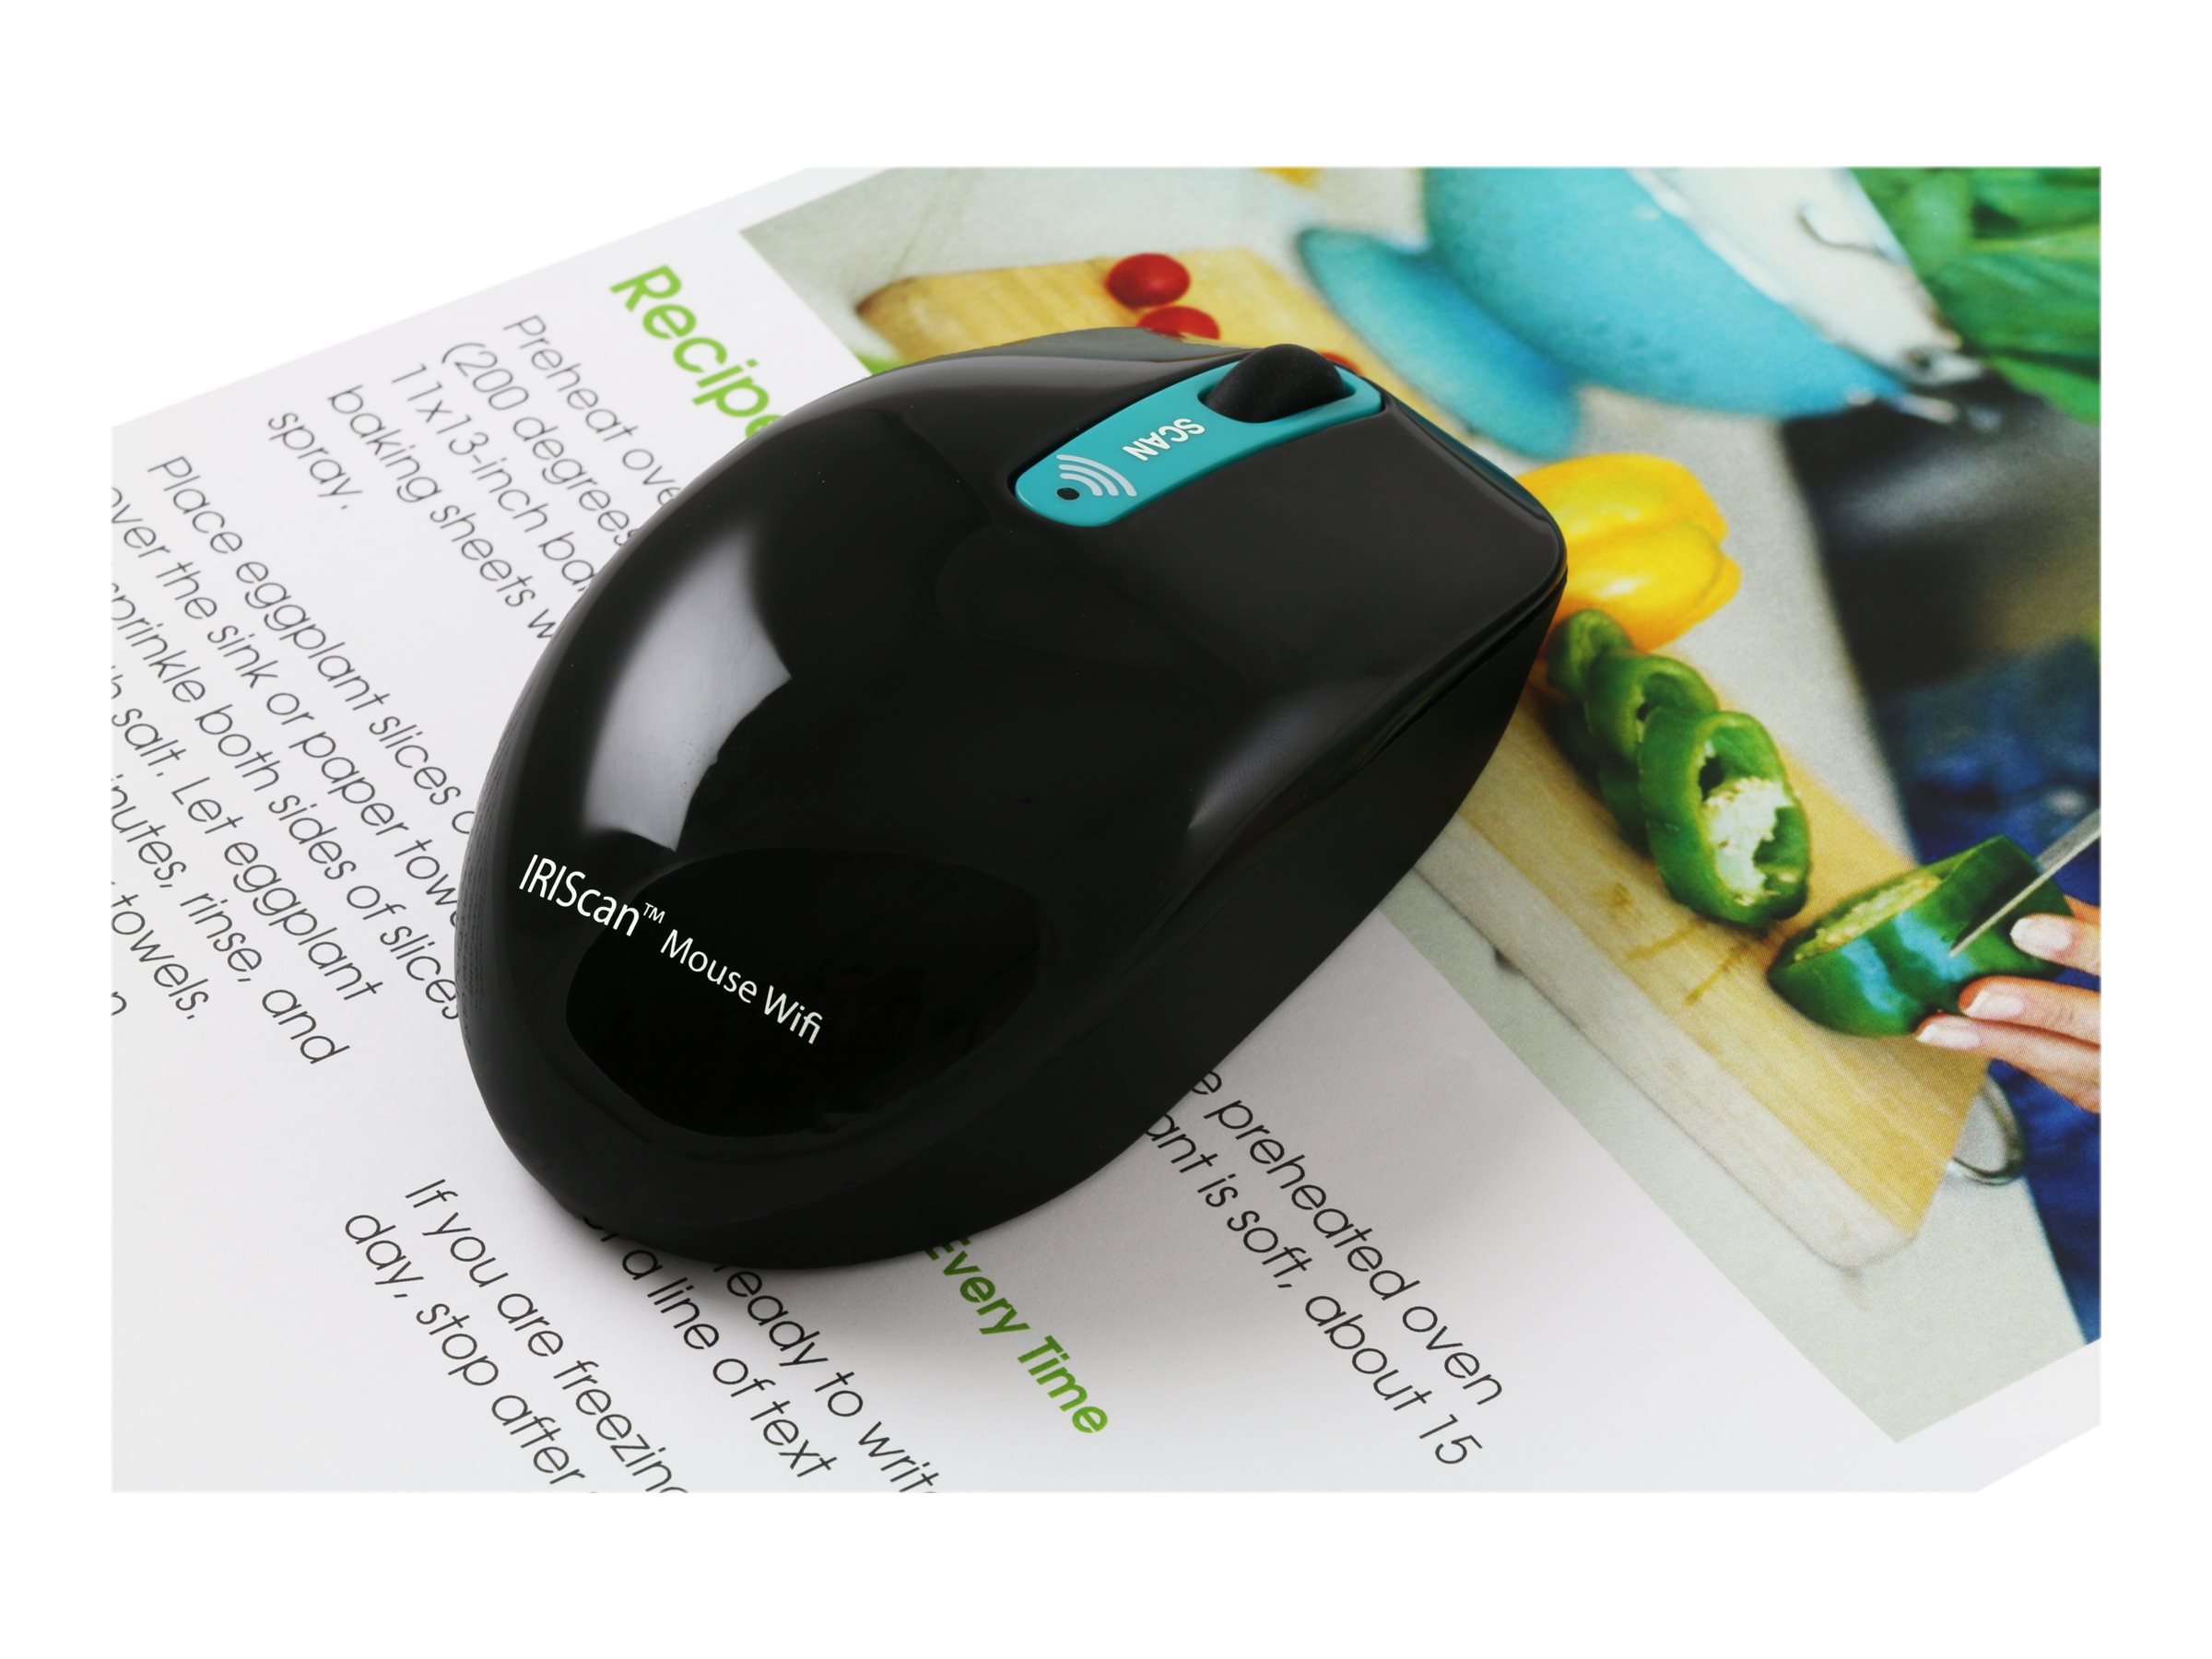 Мышка scanning. Сканер i.r.i.s. IRISCAN Mouse. Сканер беспроводной купить Германия. Сканер i.r.i.s. book 3.